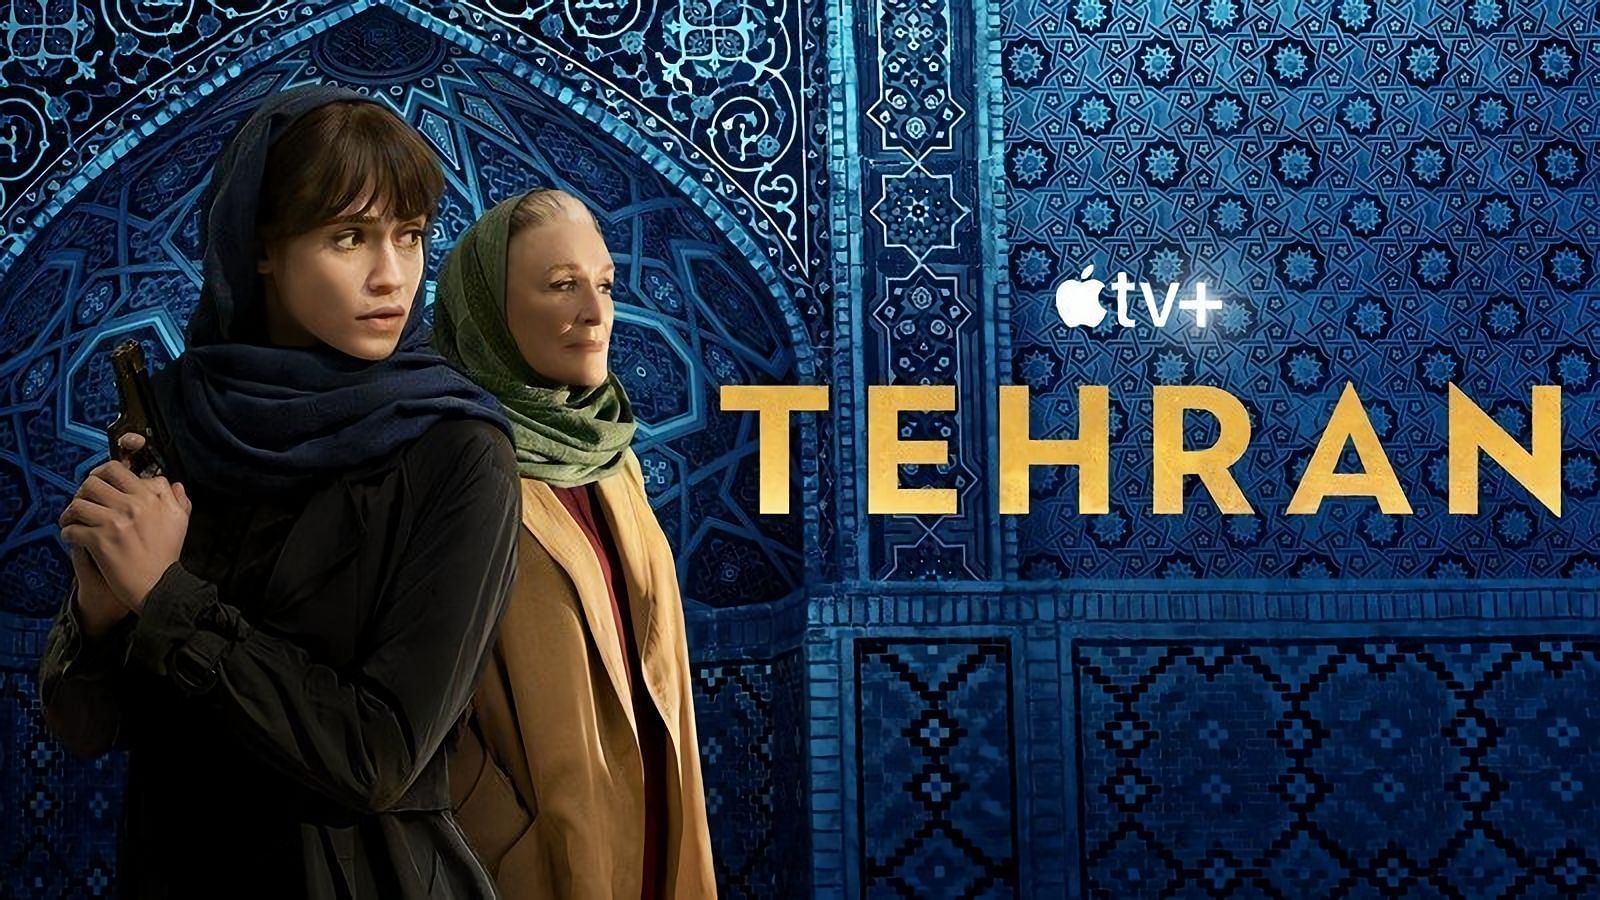 Tehran Season 2 is set to premiere on May 6 ( Image Via Apple TV+ Press)